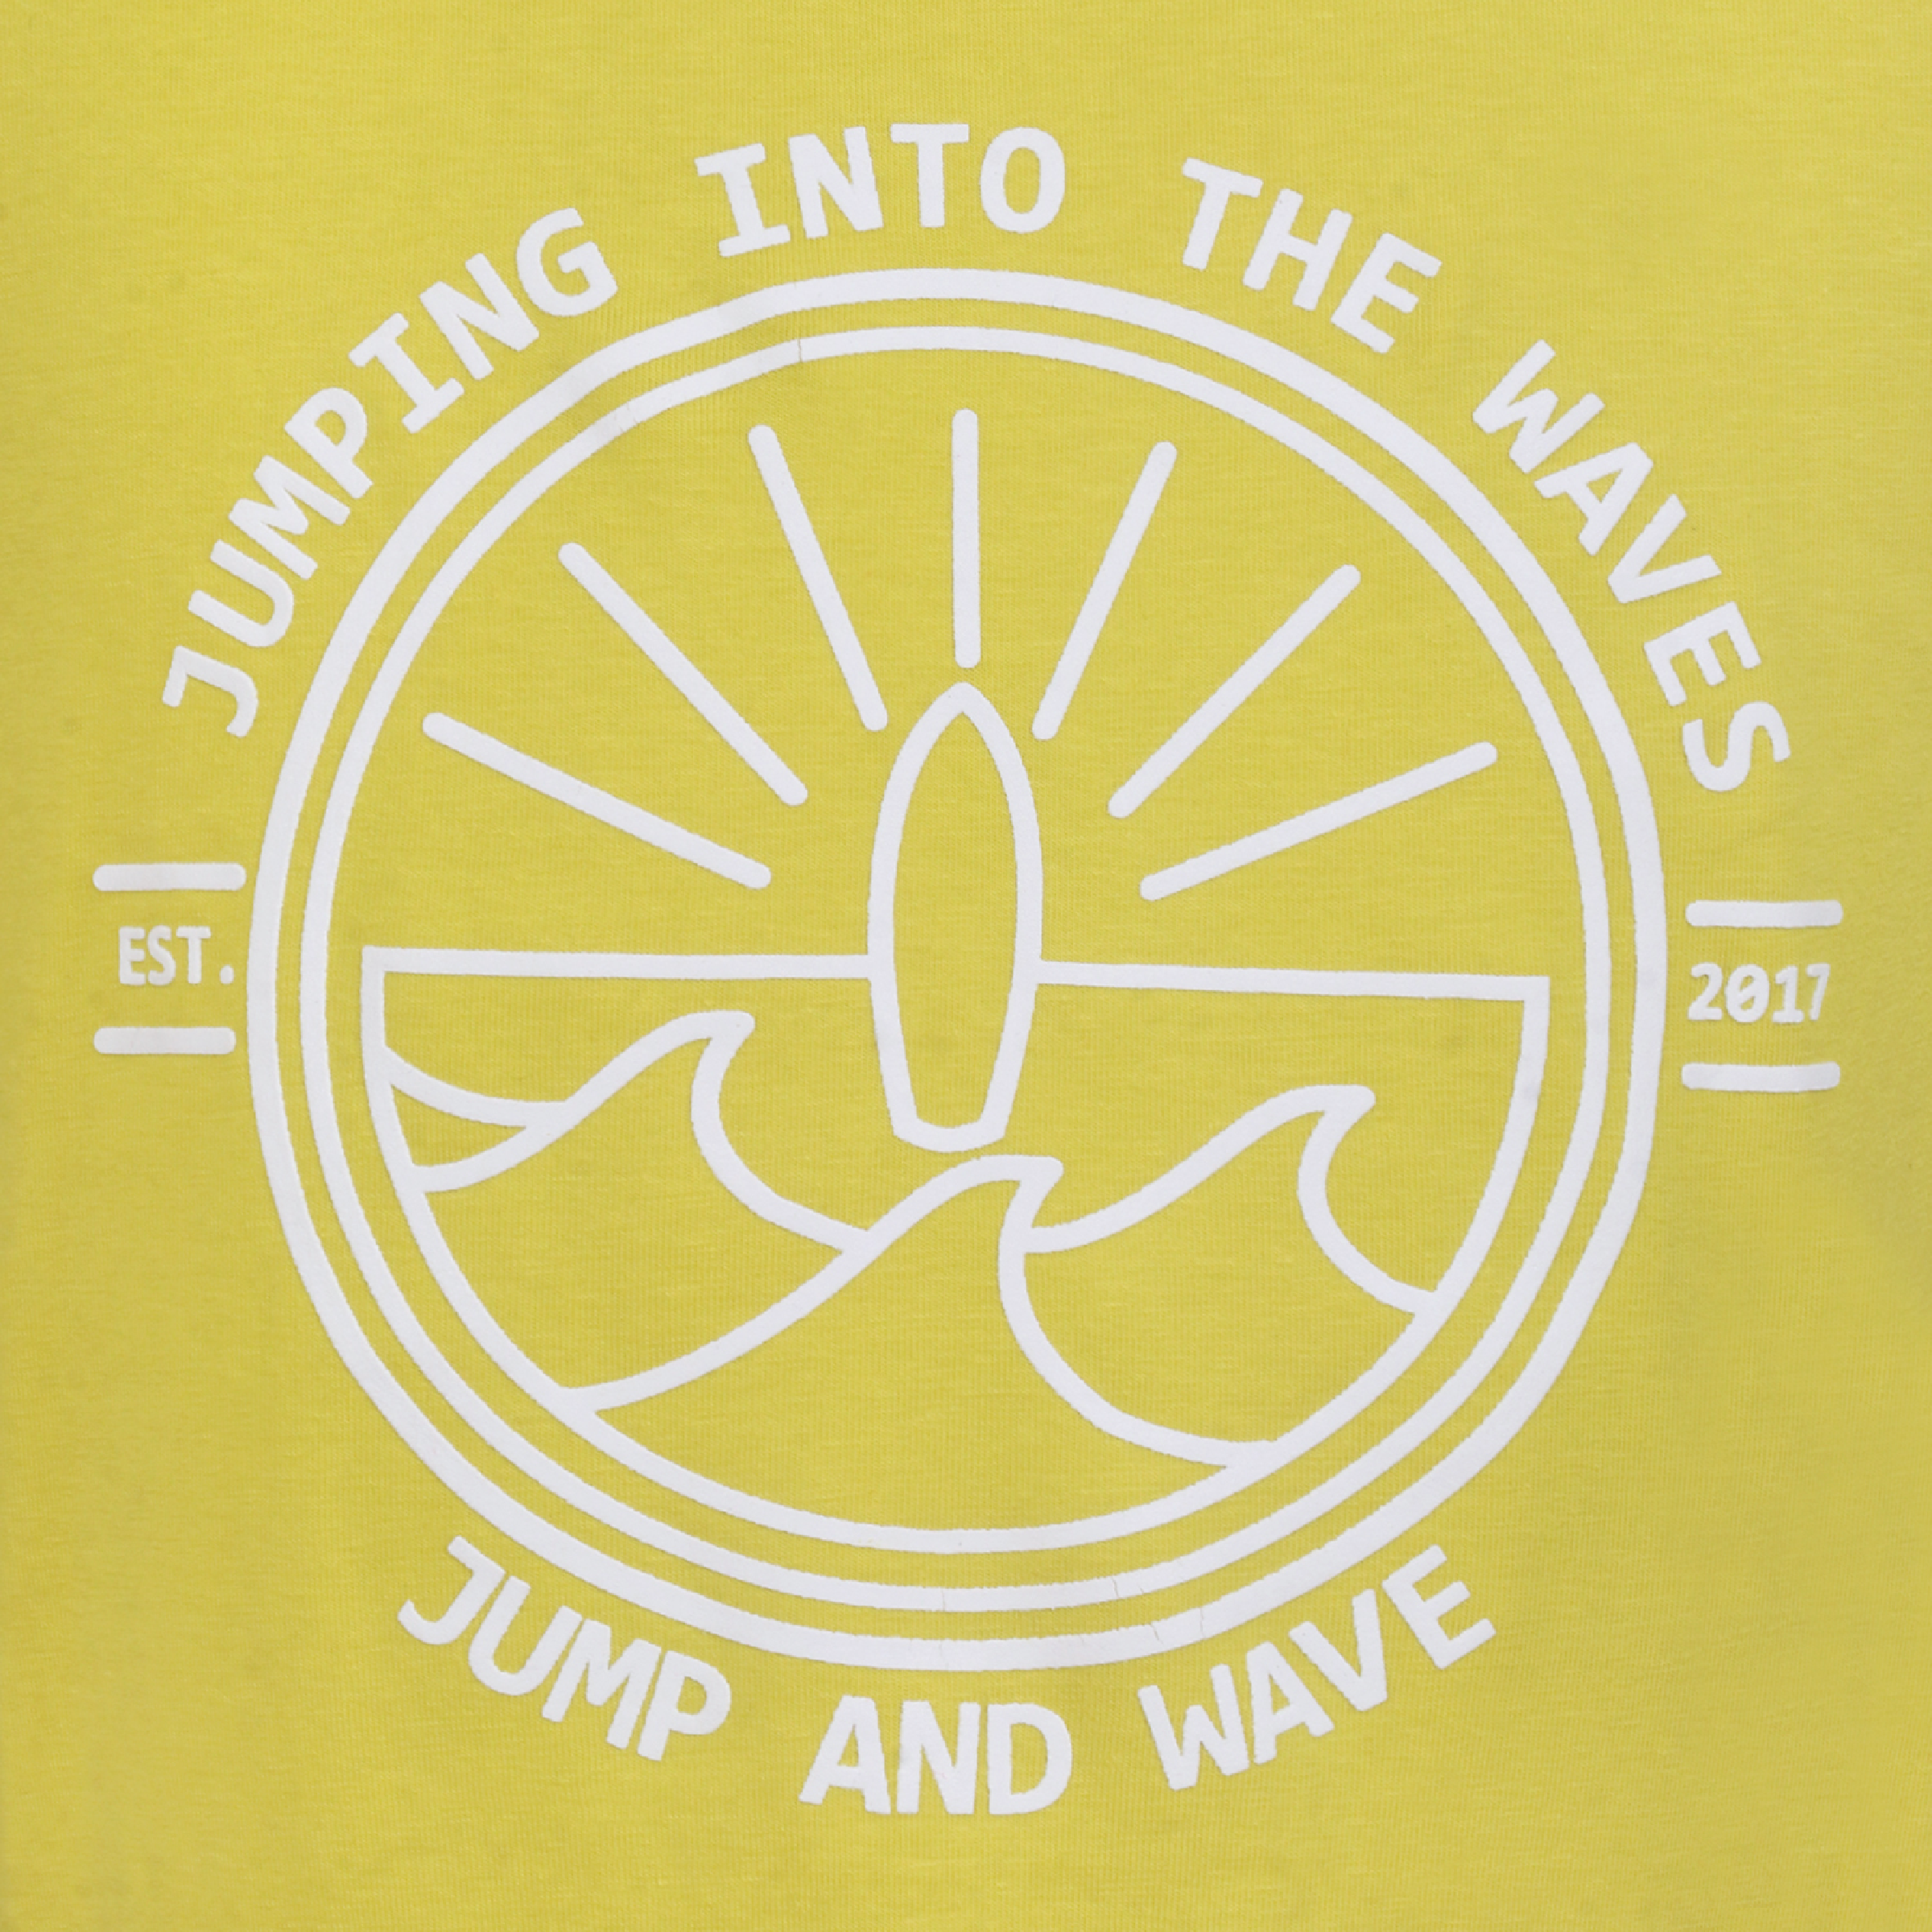 Jongens T-shirt Jumping into the waves geel van Jumping The C in de kleur Geel in maat 146, 152.